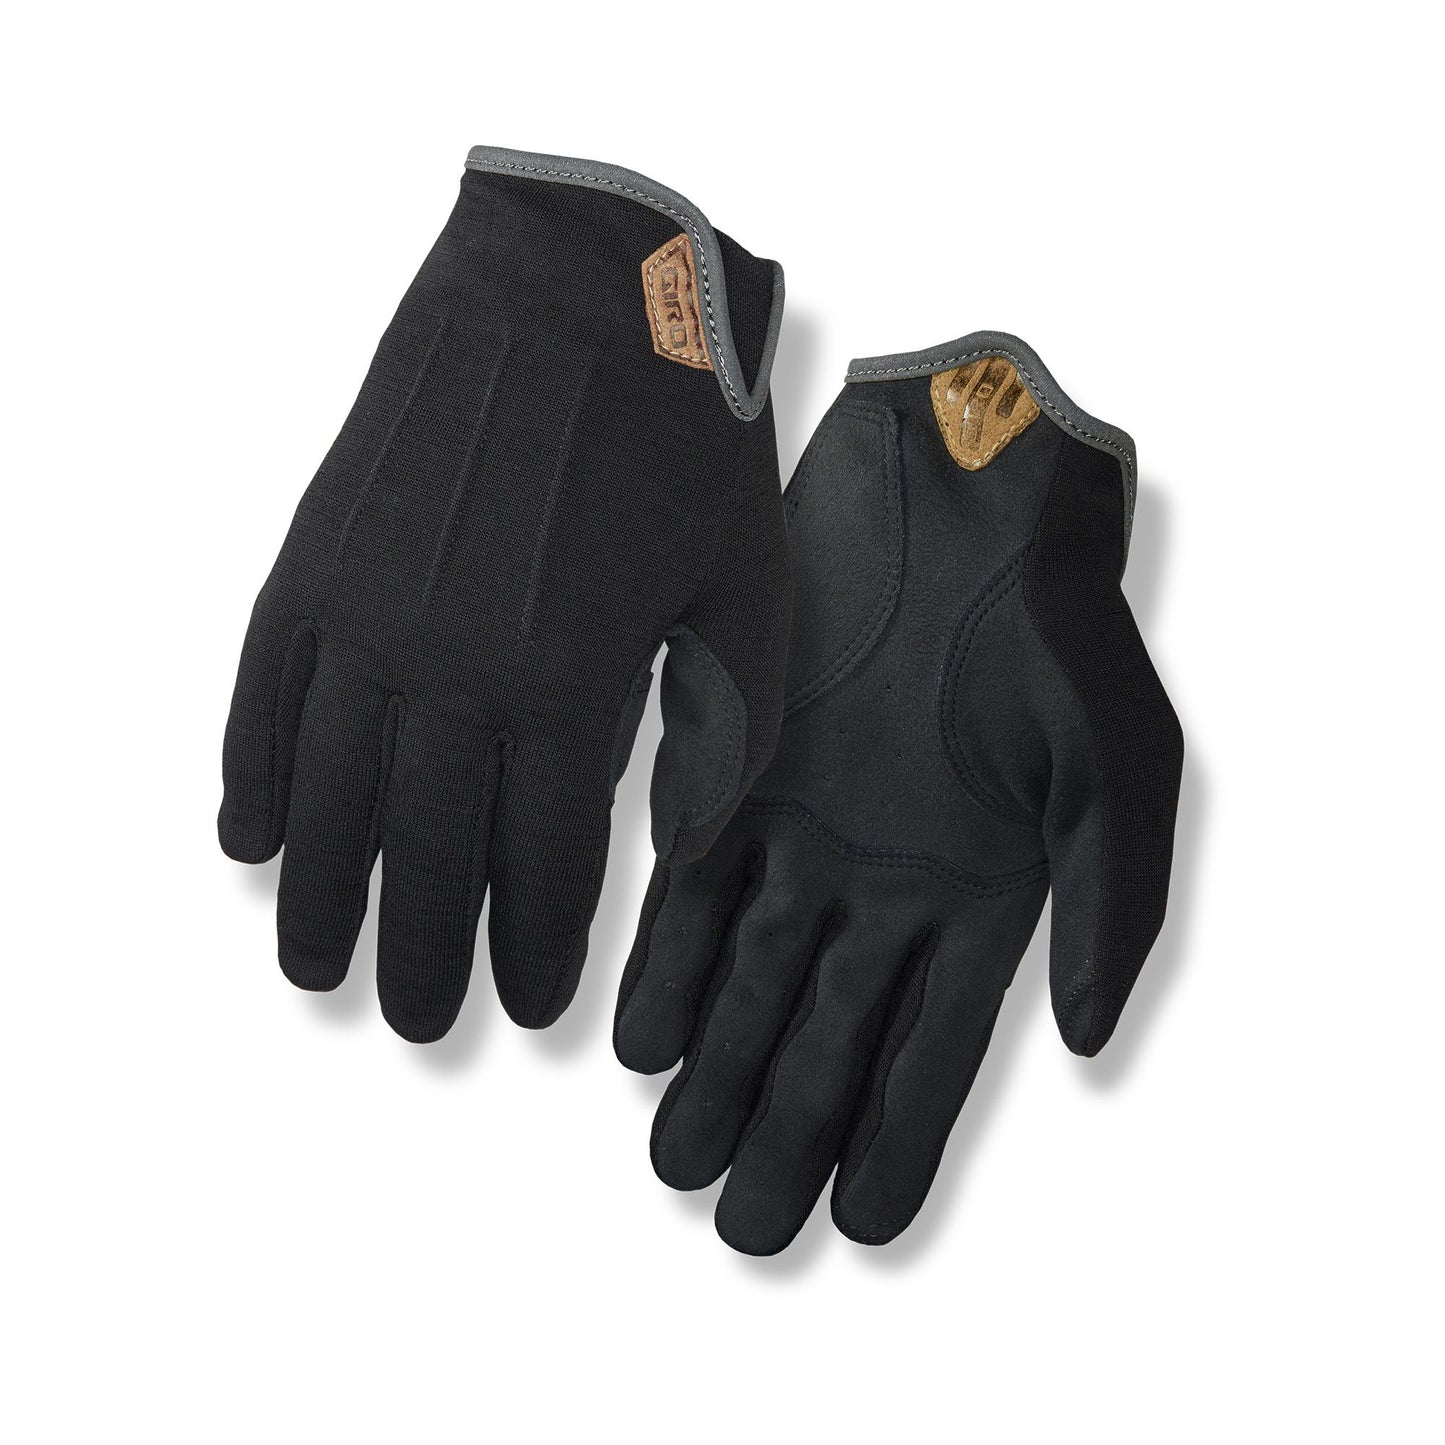 Giro D'Wool Glove Black Bike Gloves